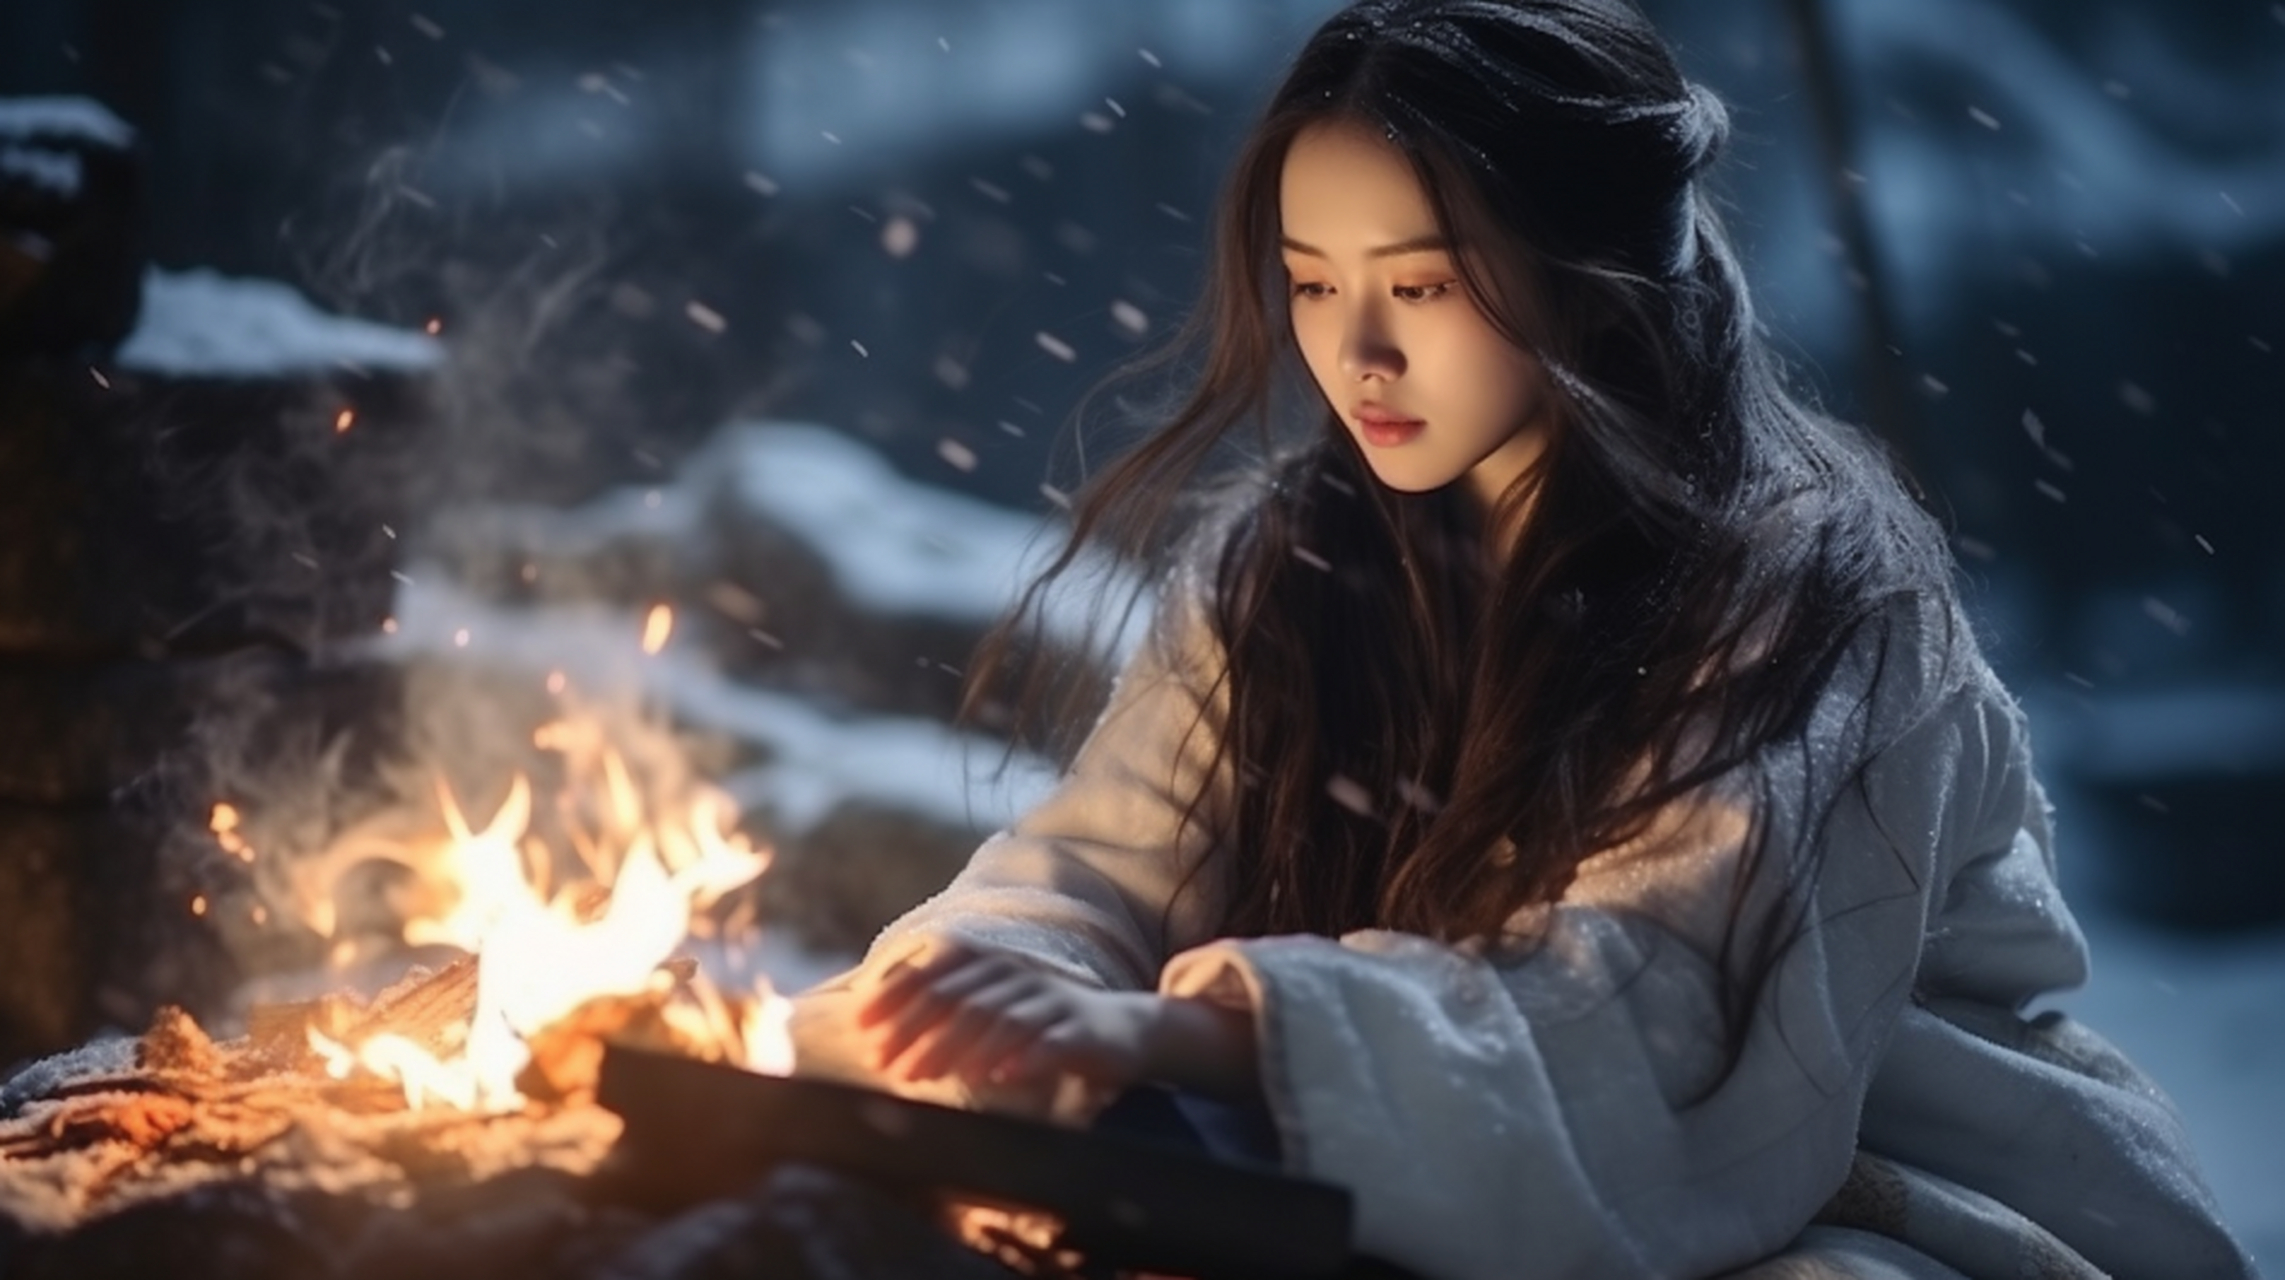 在这寂静的冬日,一个身穿古装的年轻女子坐在雪地里,面前生着一个火堆